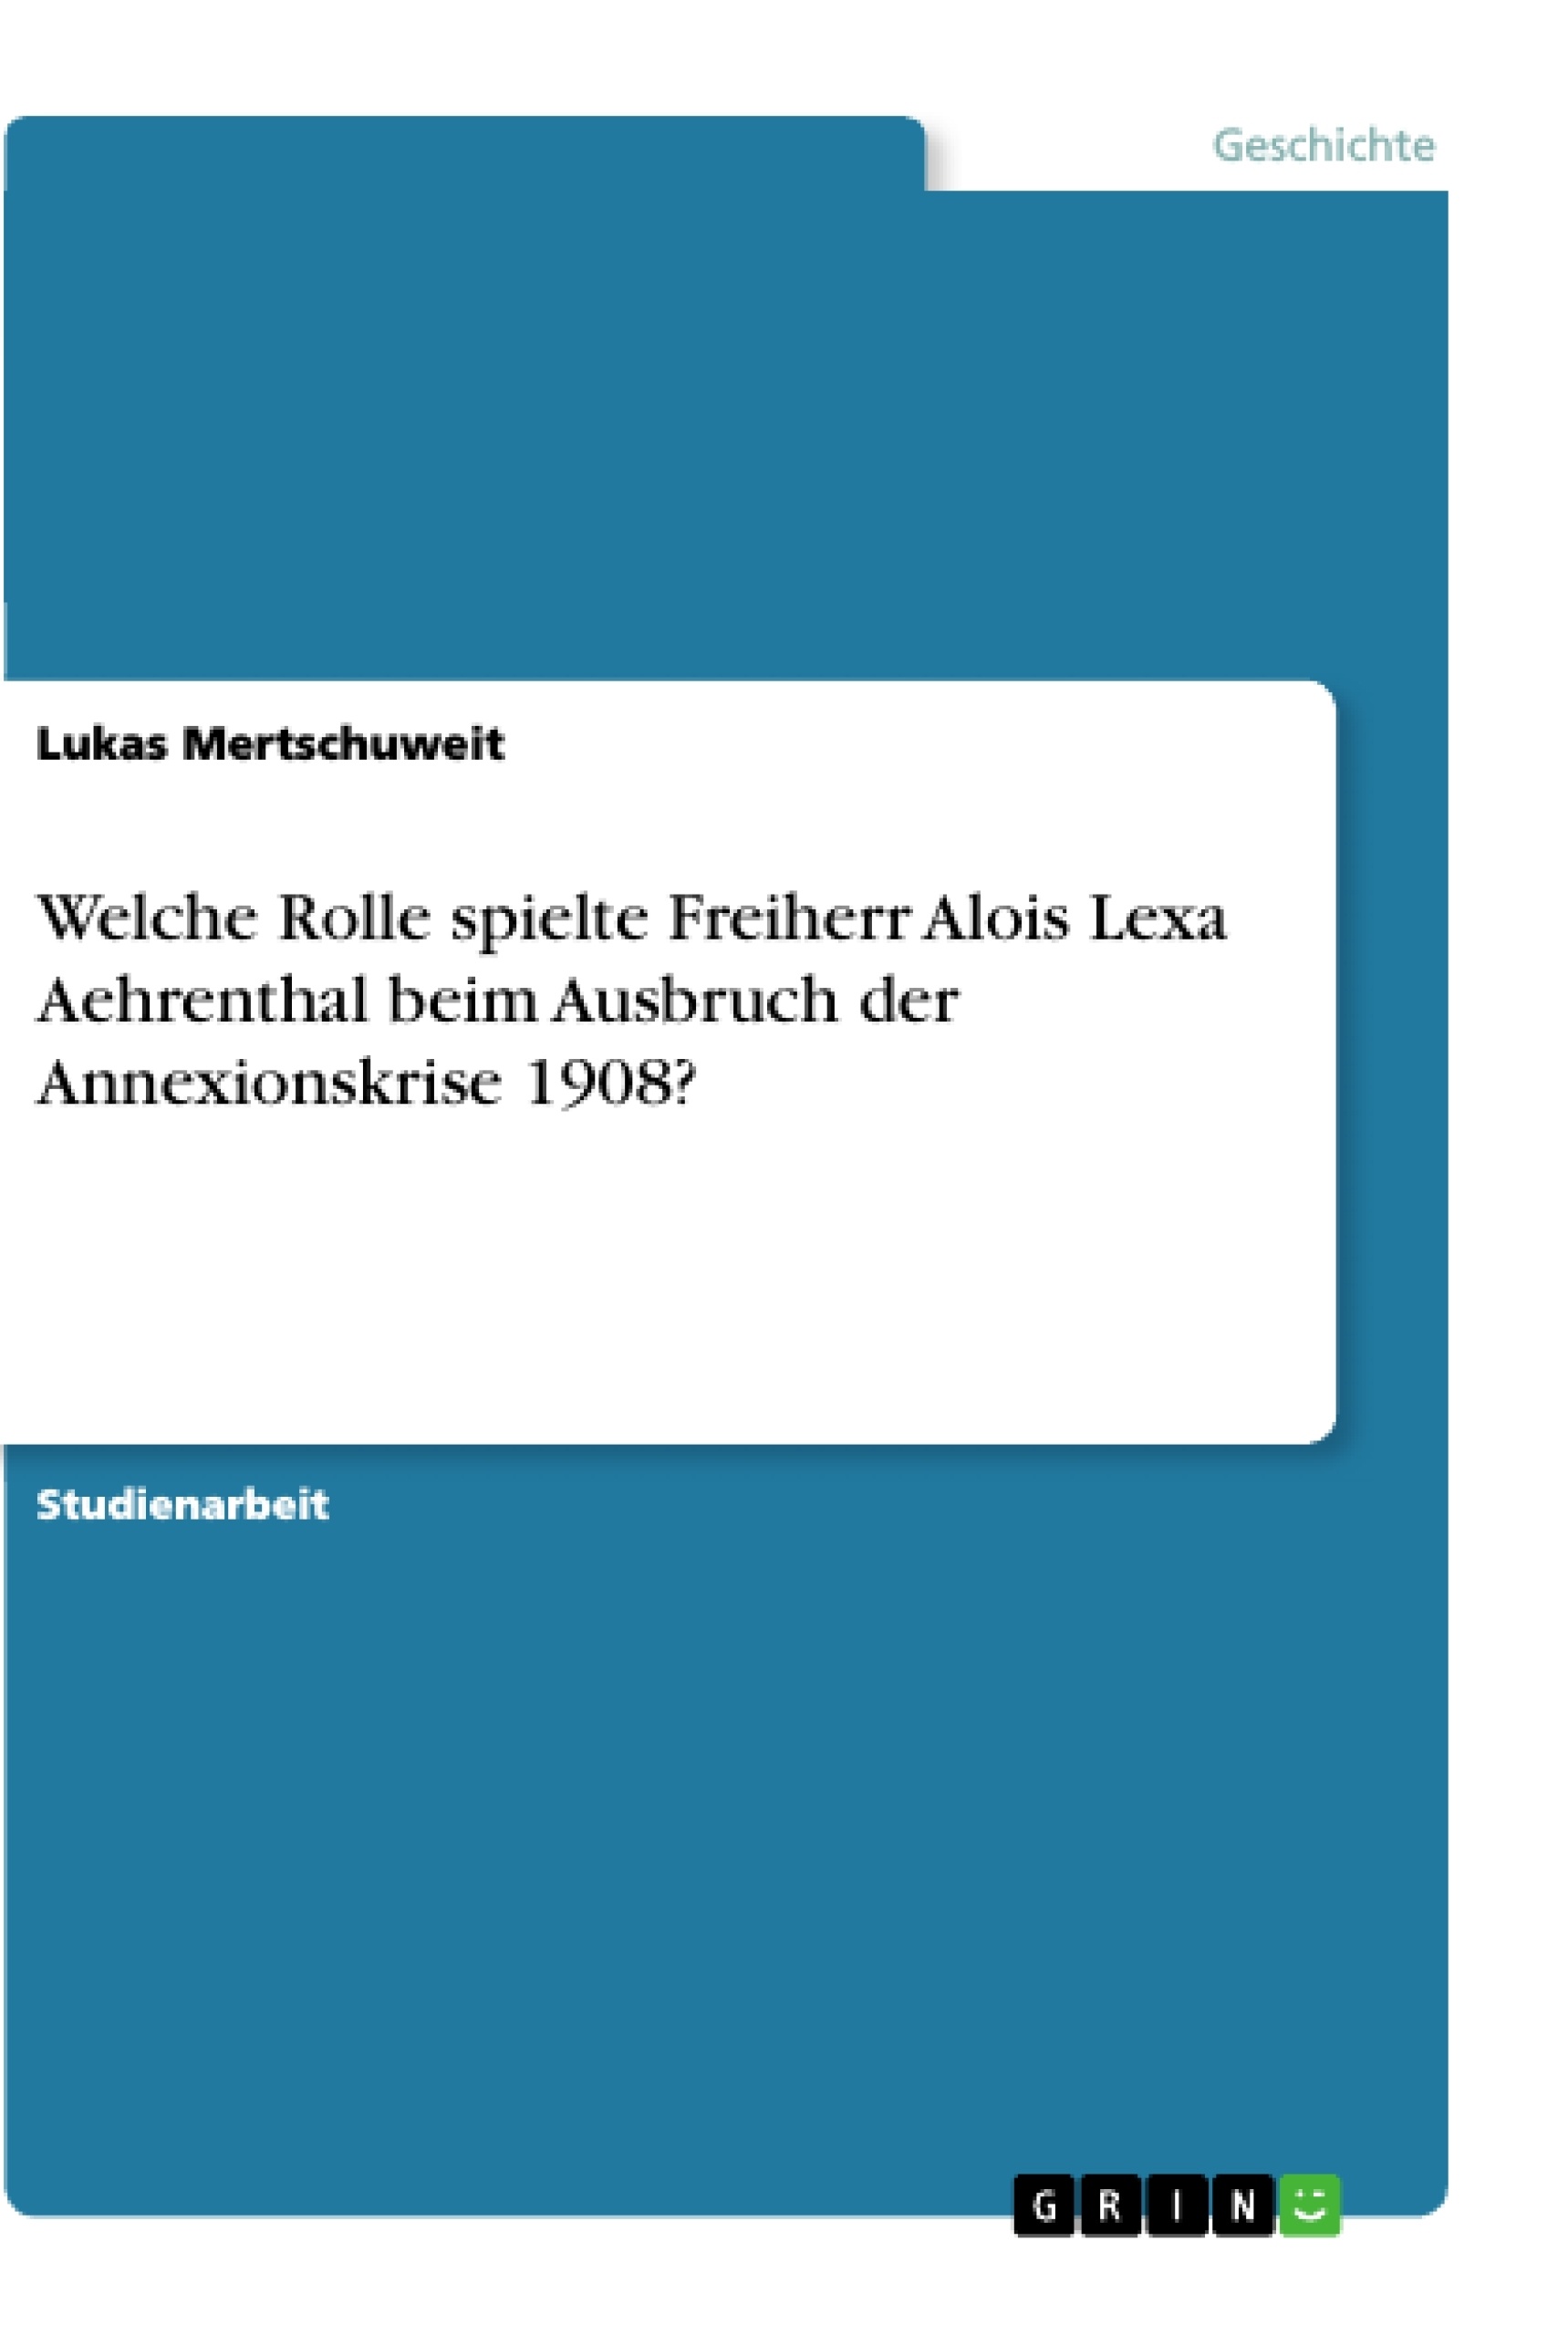 Title: Welche Rolle spielte Freiherr Alois Lexa Aehrenthal beim Ausbruch der Annexionskrise 1908?